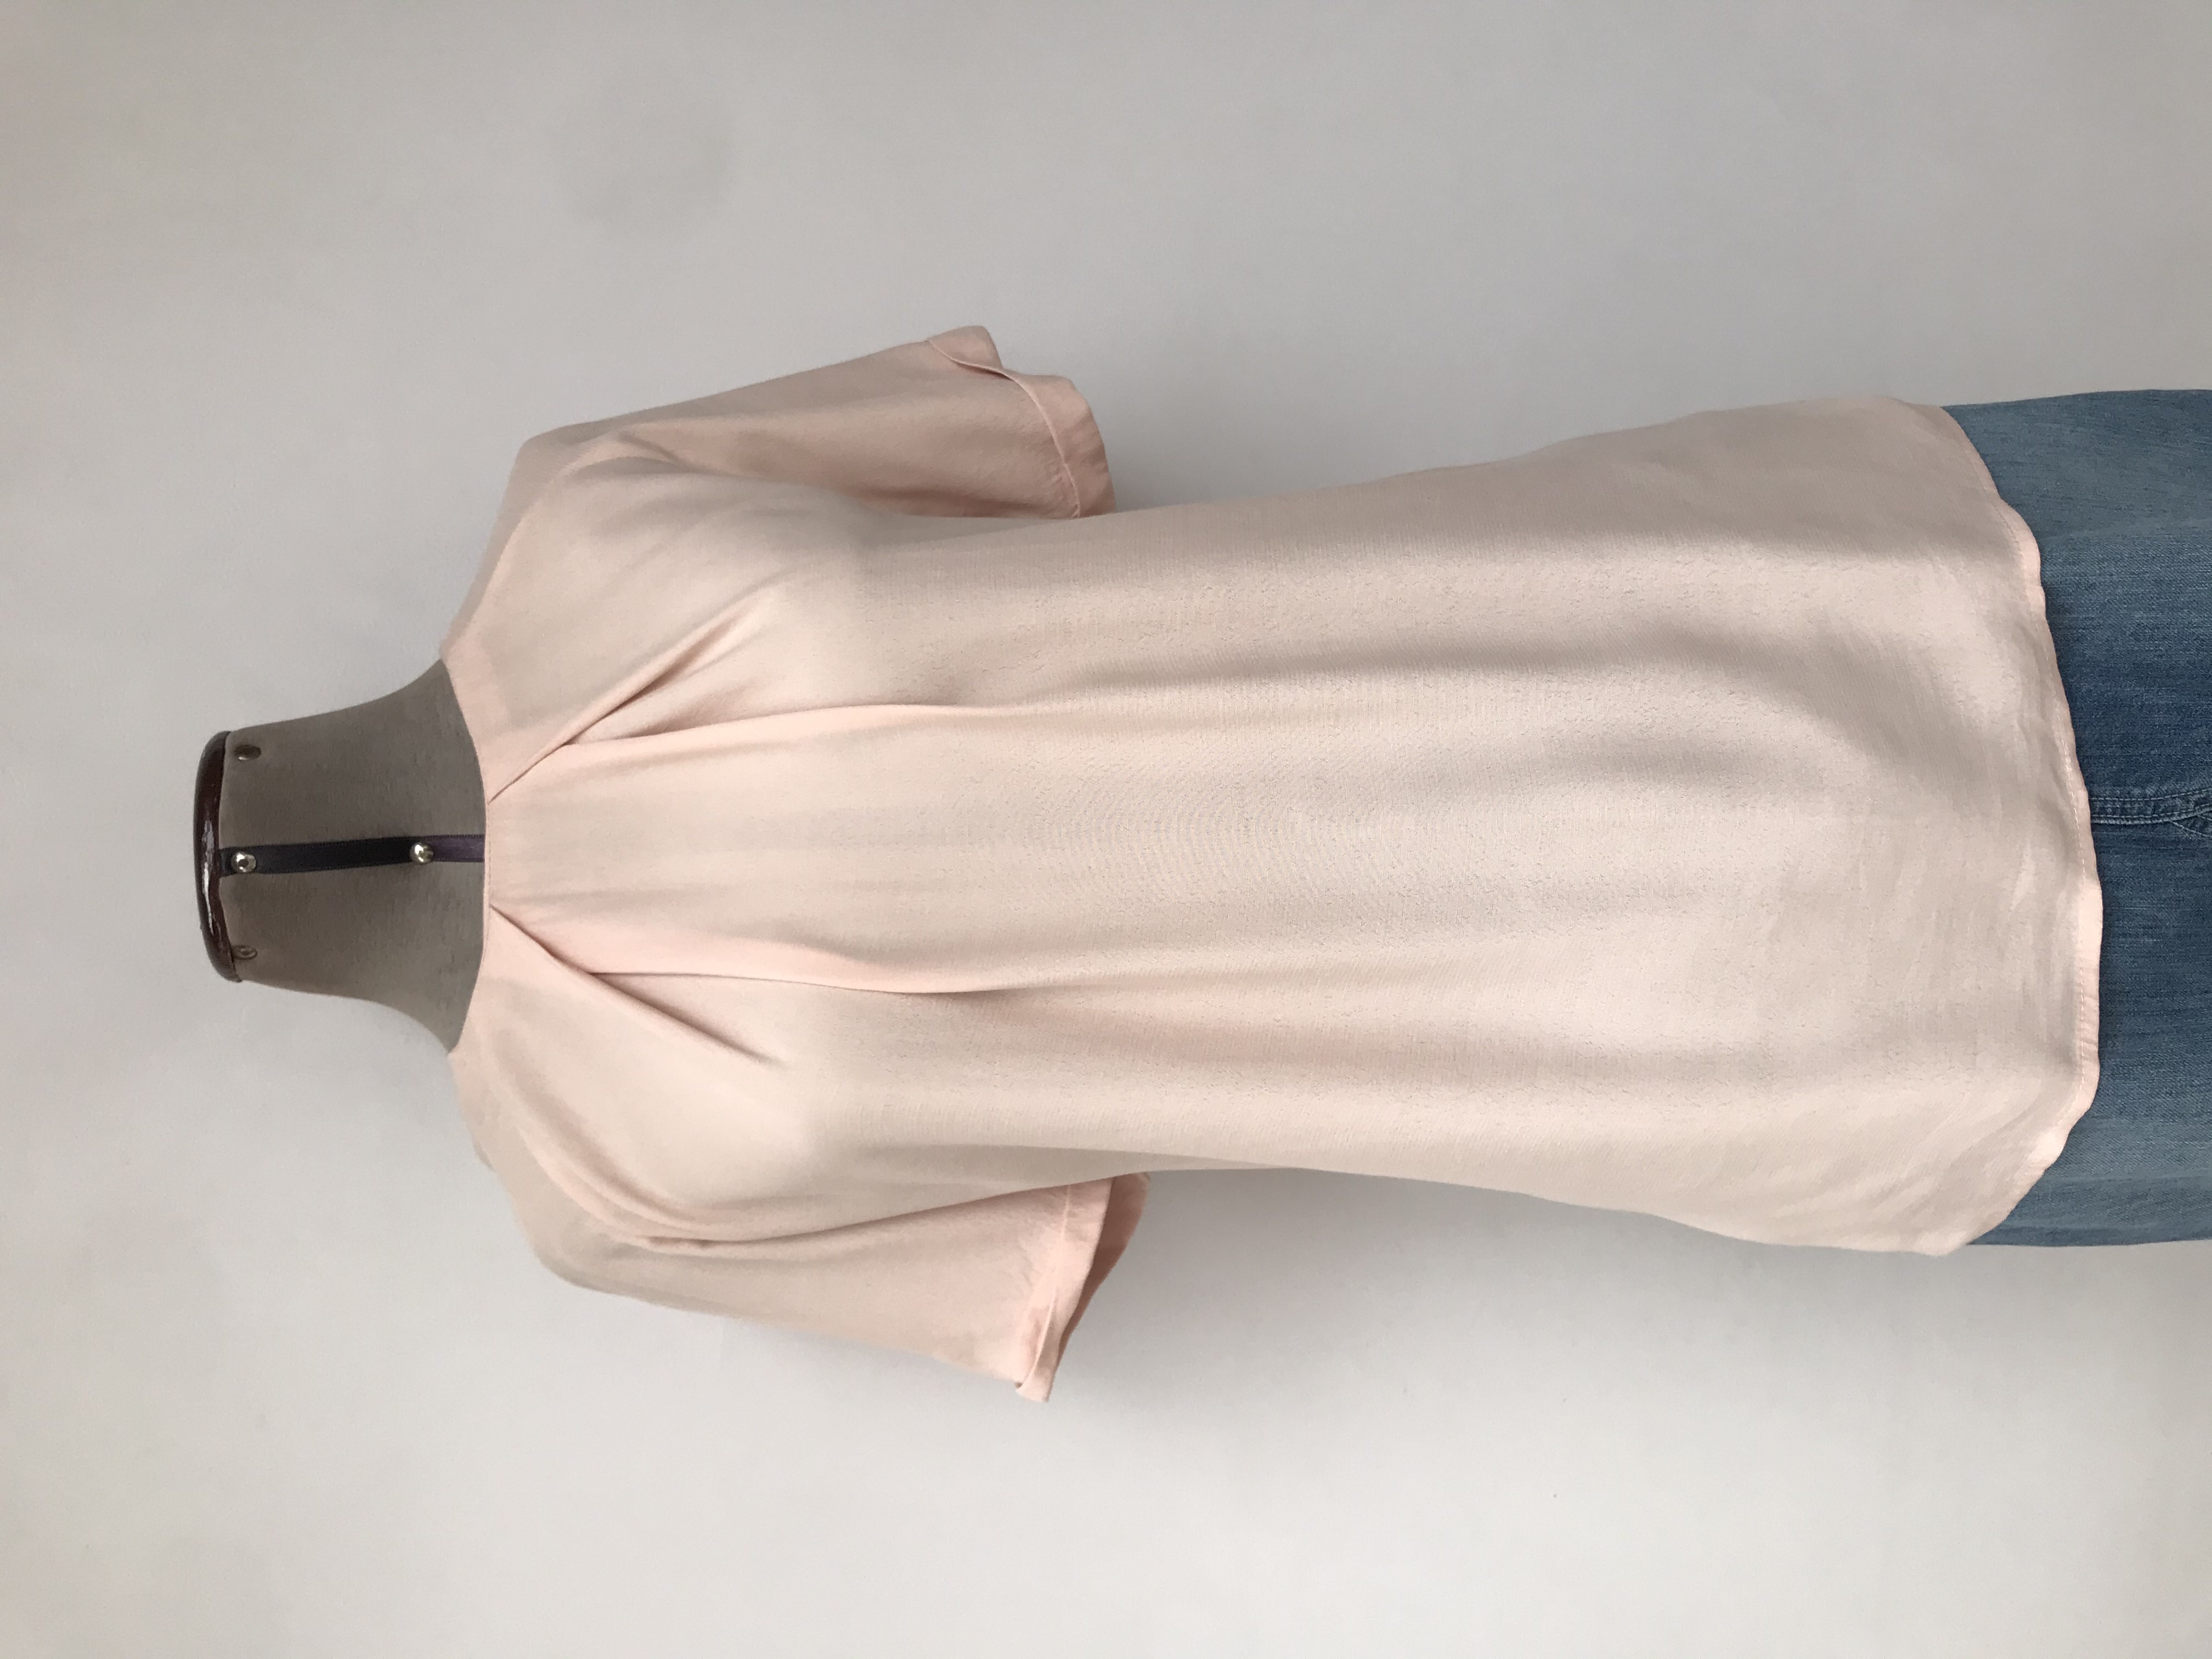 Blusa Mango palo rosa, pliegues delanteros, dobladillo en mangas, broche y escote posterior, basta asimétrica más larga atrásTalla M